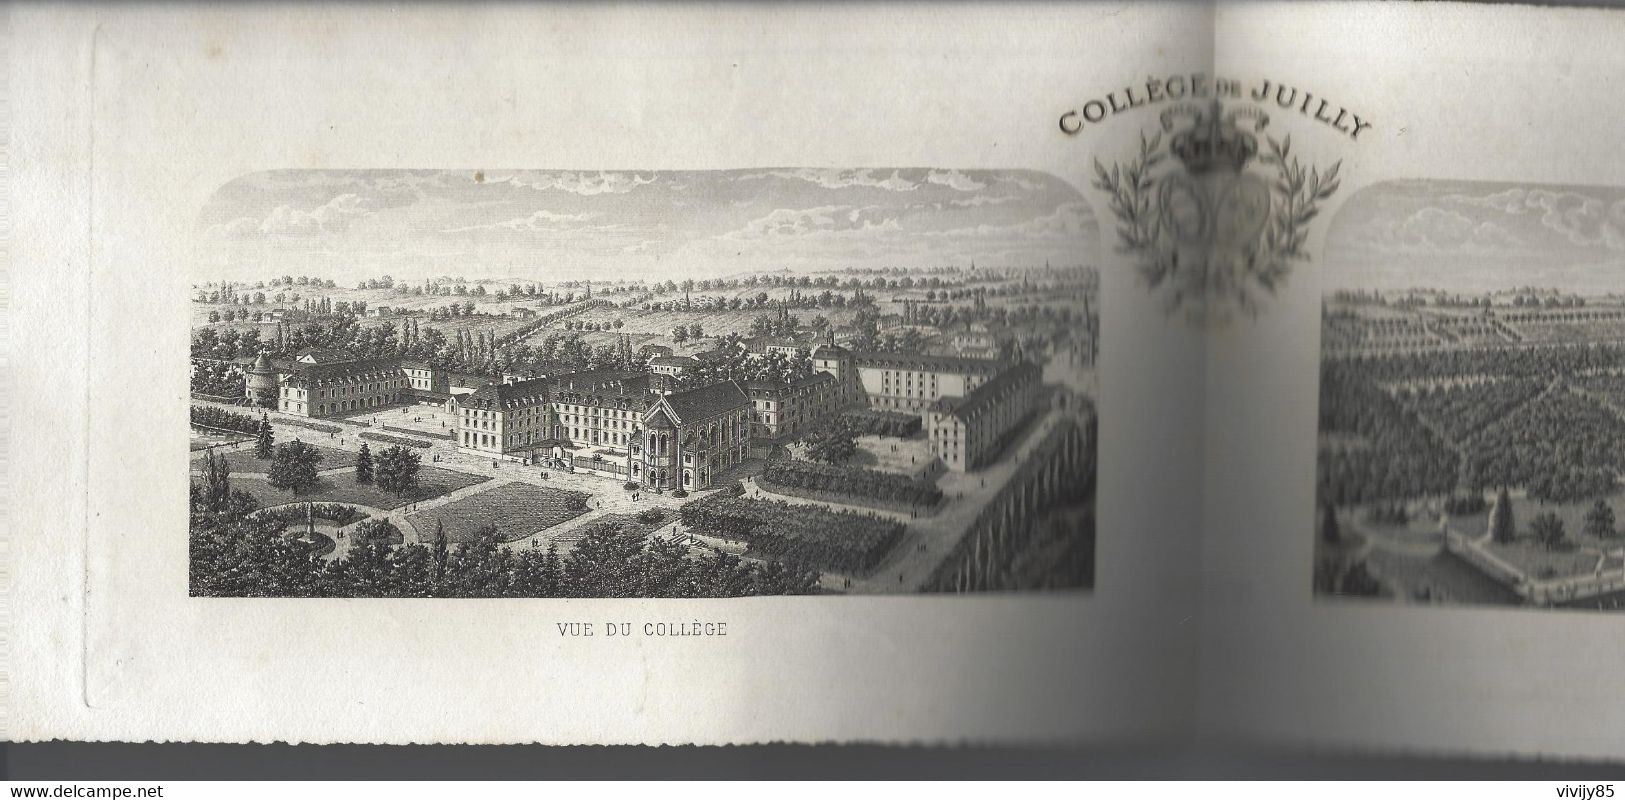 77 - JUILLY - Bulletin N° 12 du Collège avec gravure 45.2 cm x 14 - 64 pages